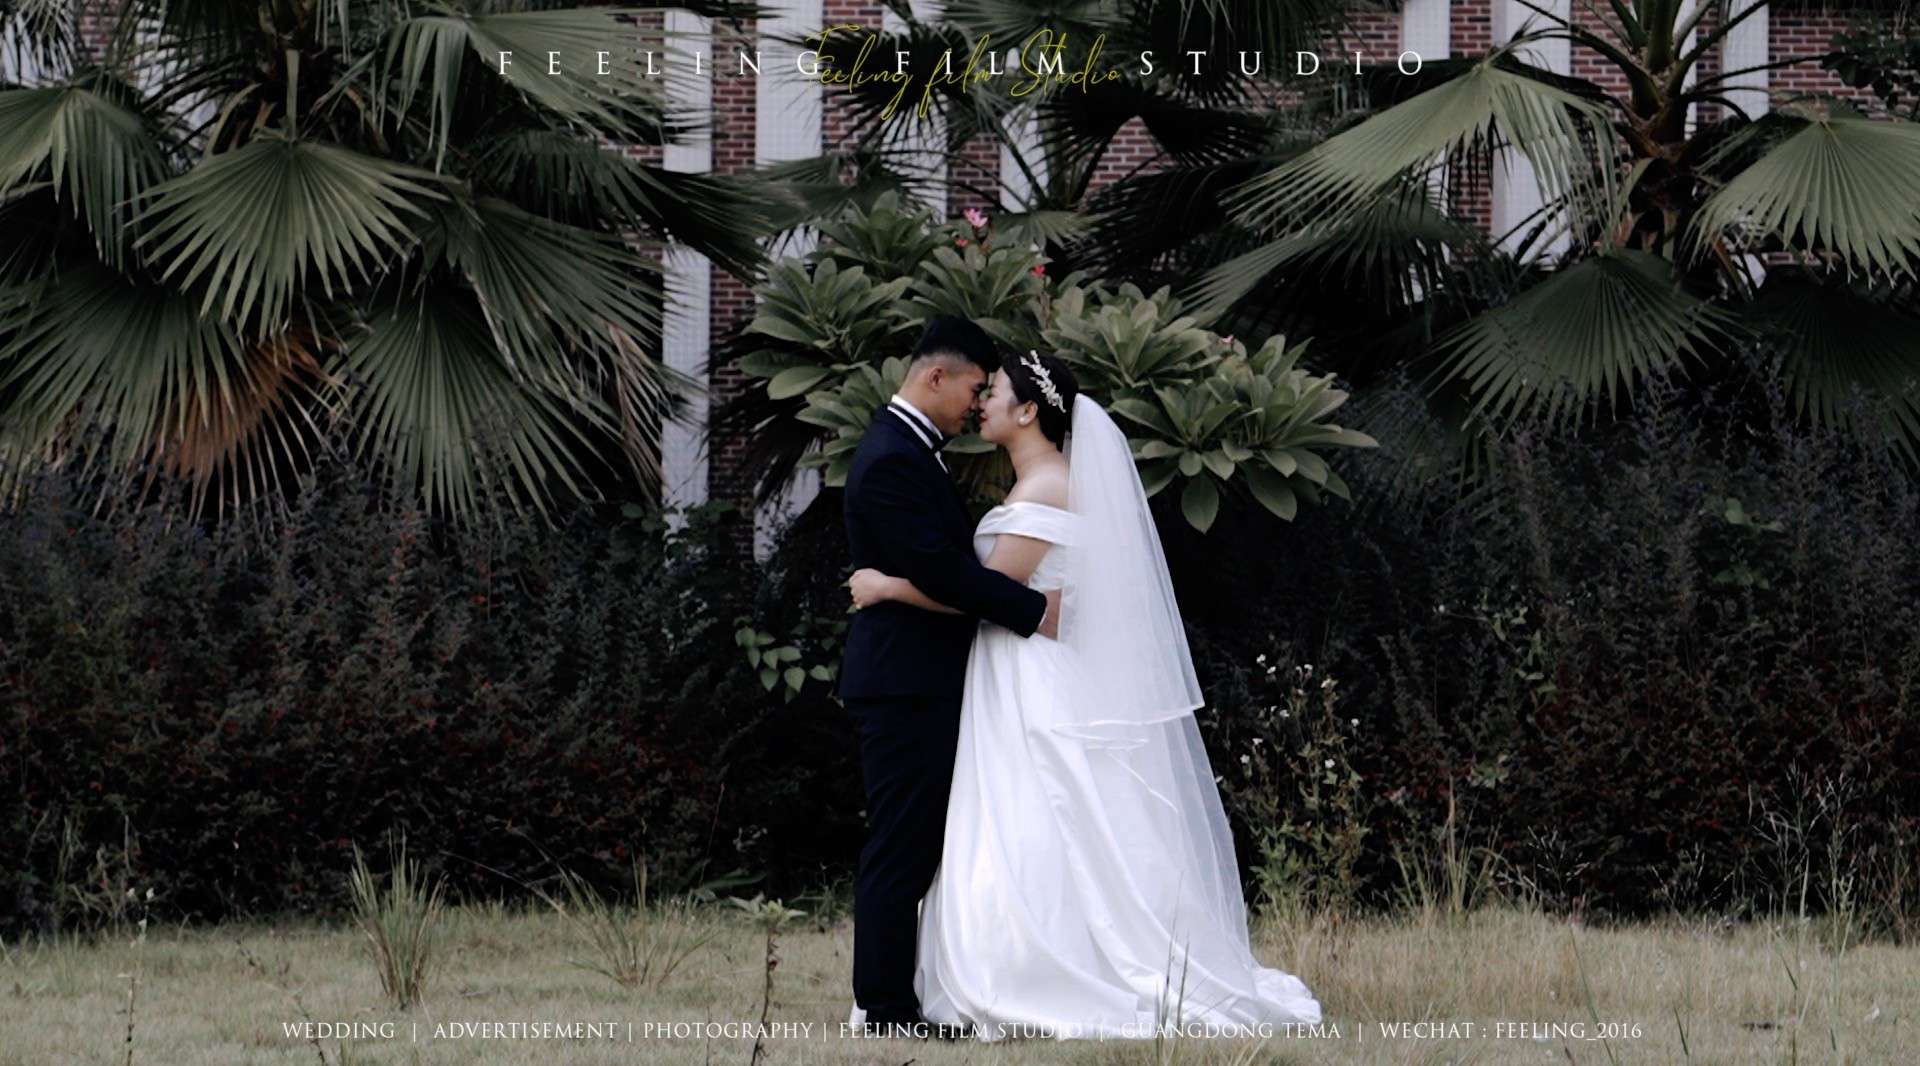 「HUANG & LI」 2020.10.27婚礼快剪 | 菲林婚礼电影